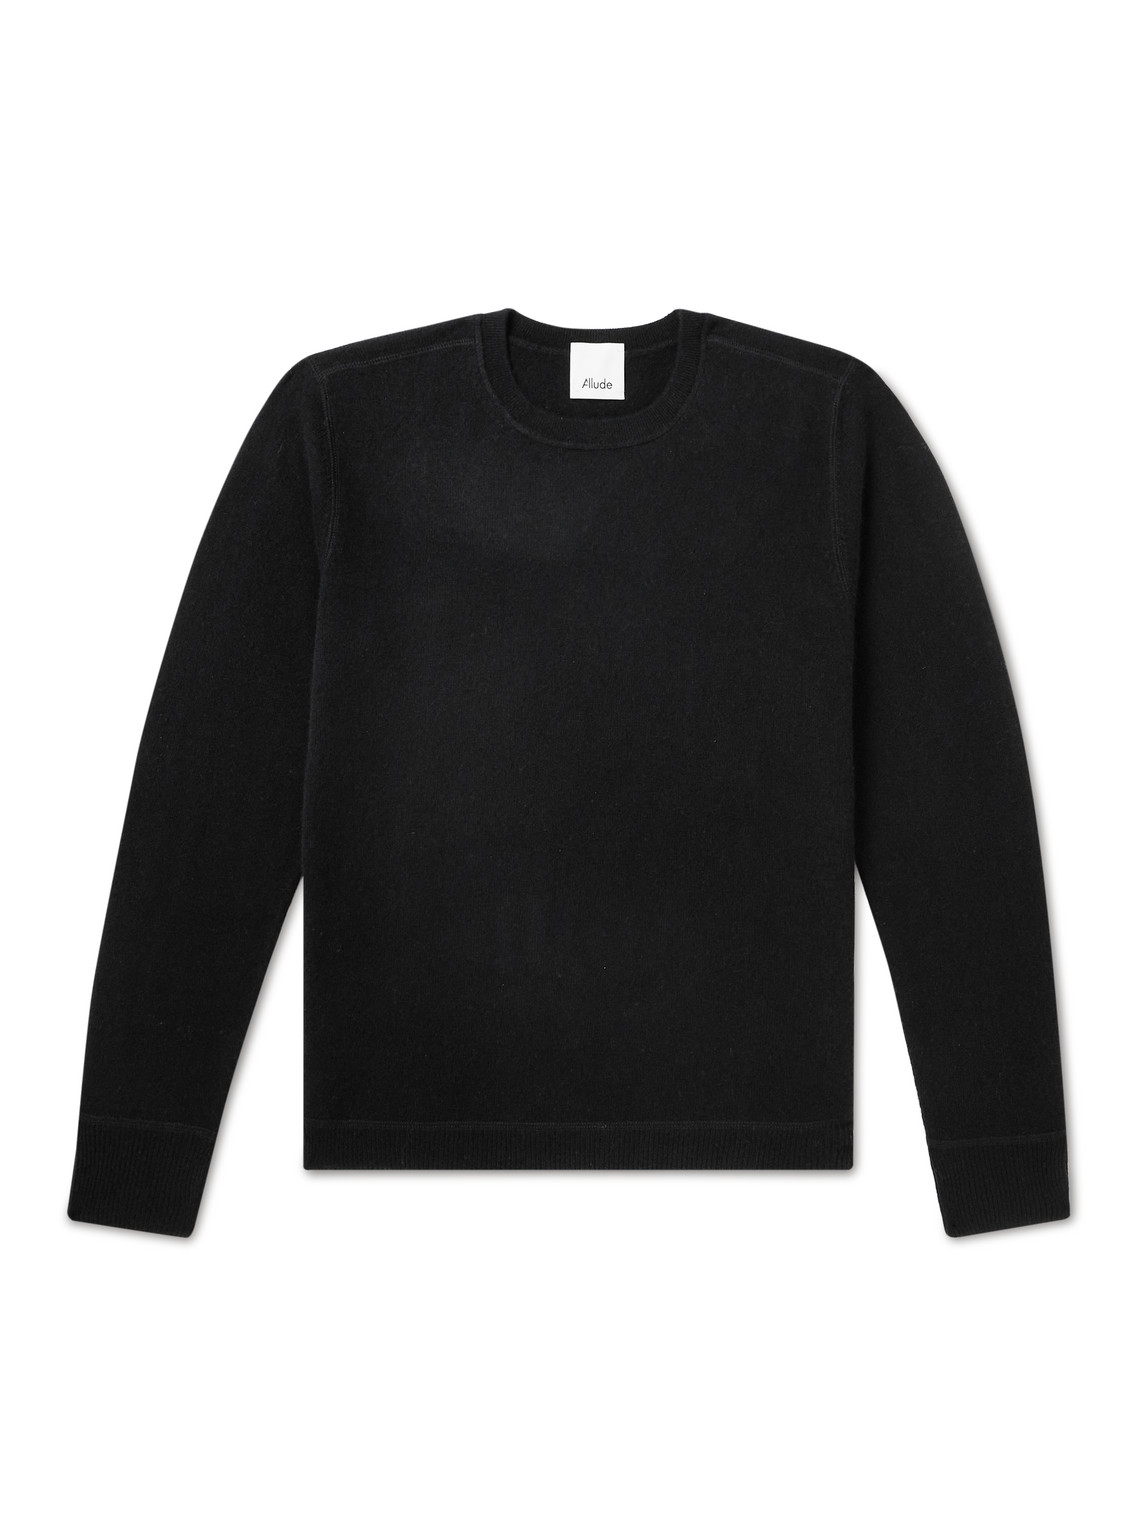 Allude Cashmere Sweater In Black